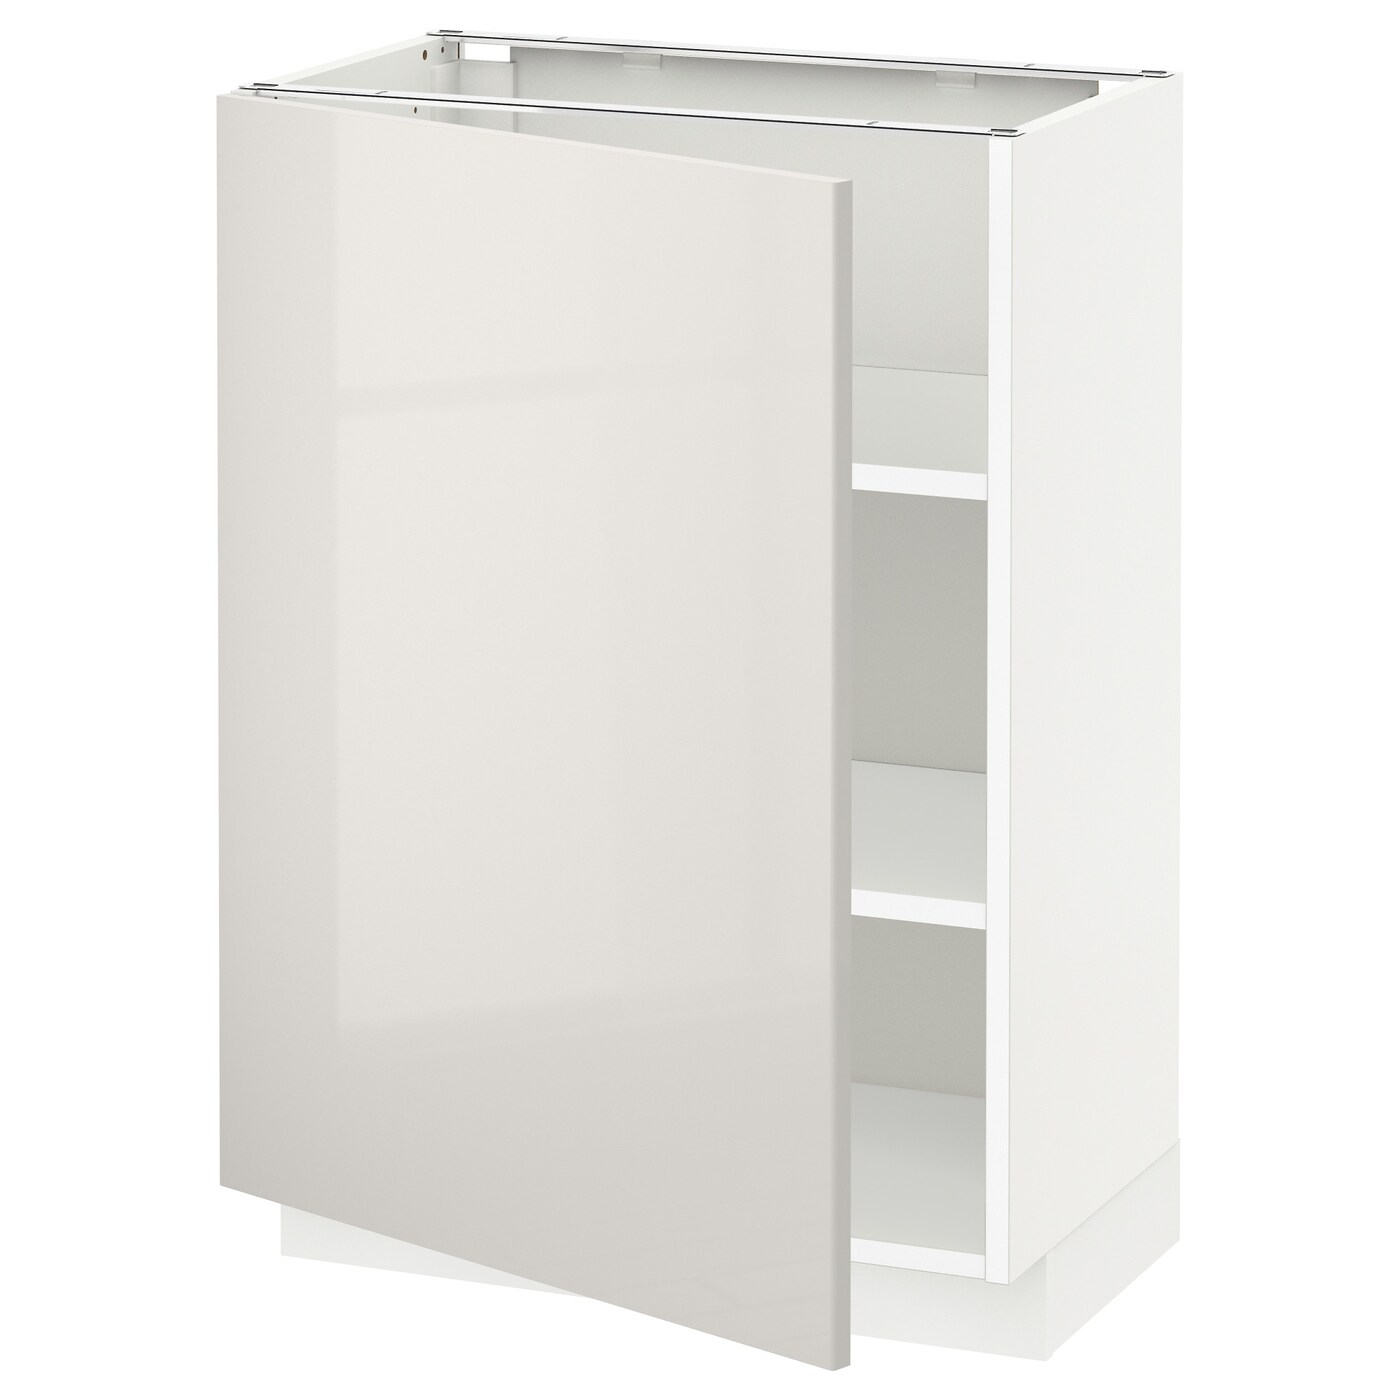 Напольный кухонный шкаф  - IKEA METOD, 88x39x60см, белый/светло-бежевый, МЕТОД ИКЕА